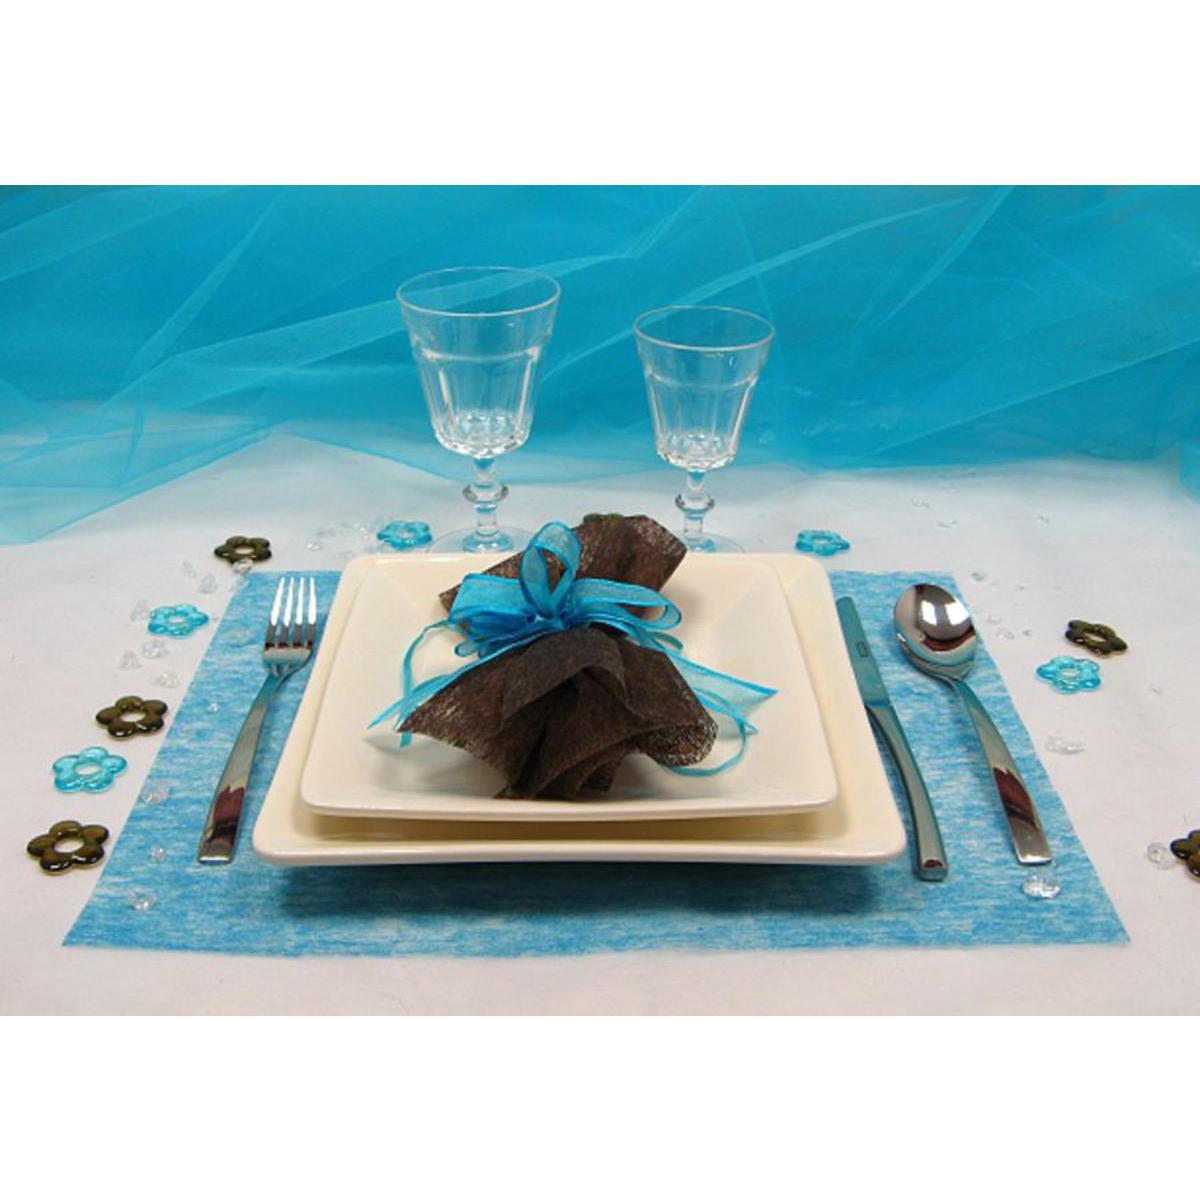 4 sets de table rectangulaires - 30 x 40 cm - Tissu - Bleu turquoise